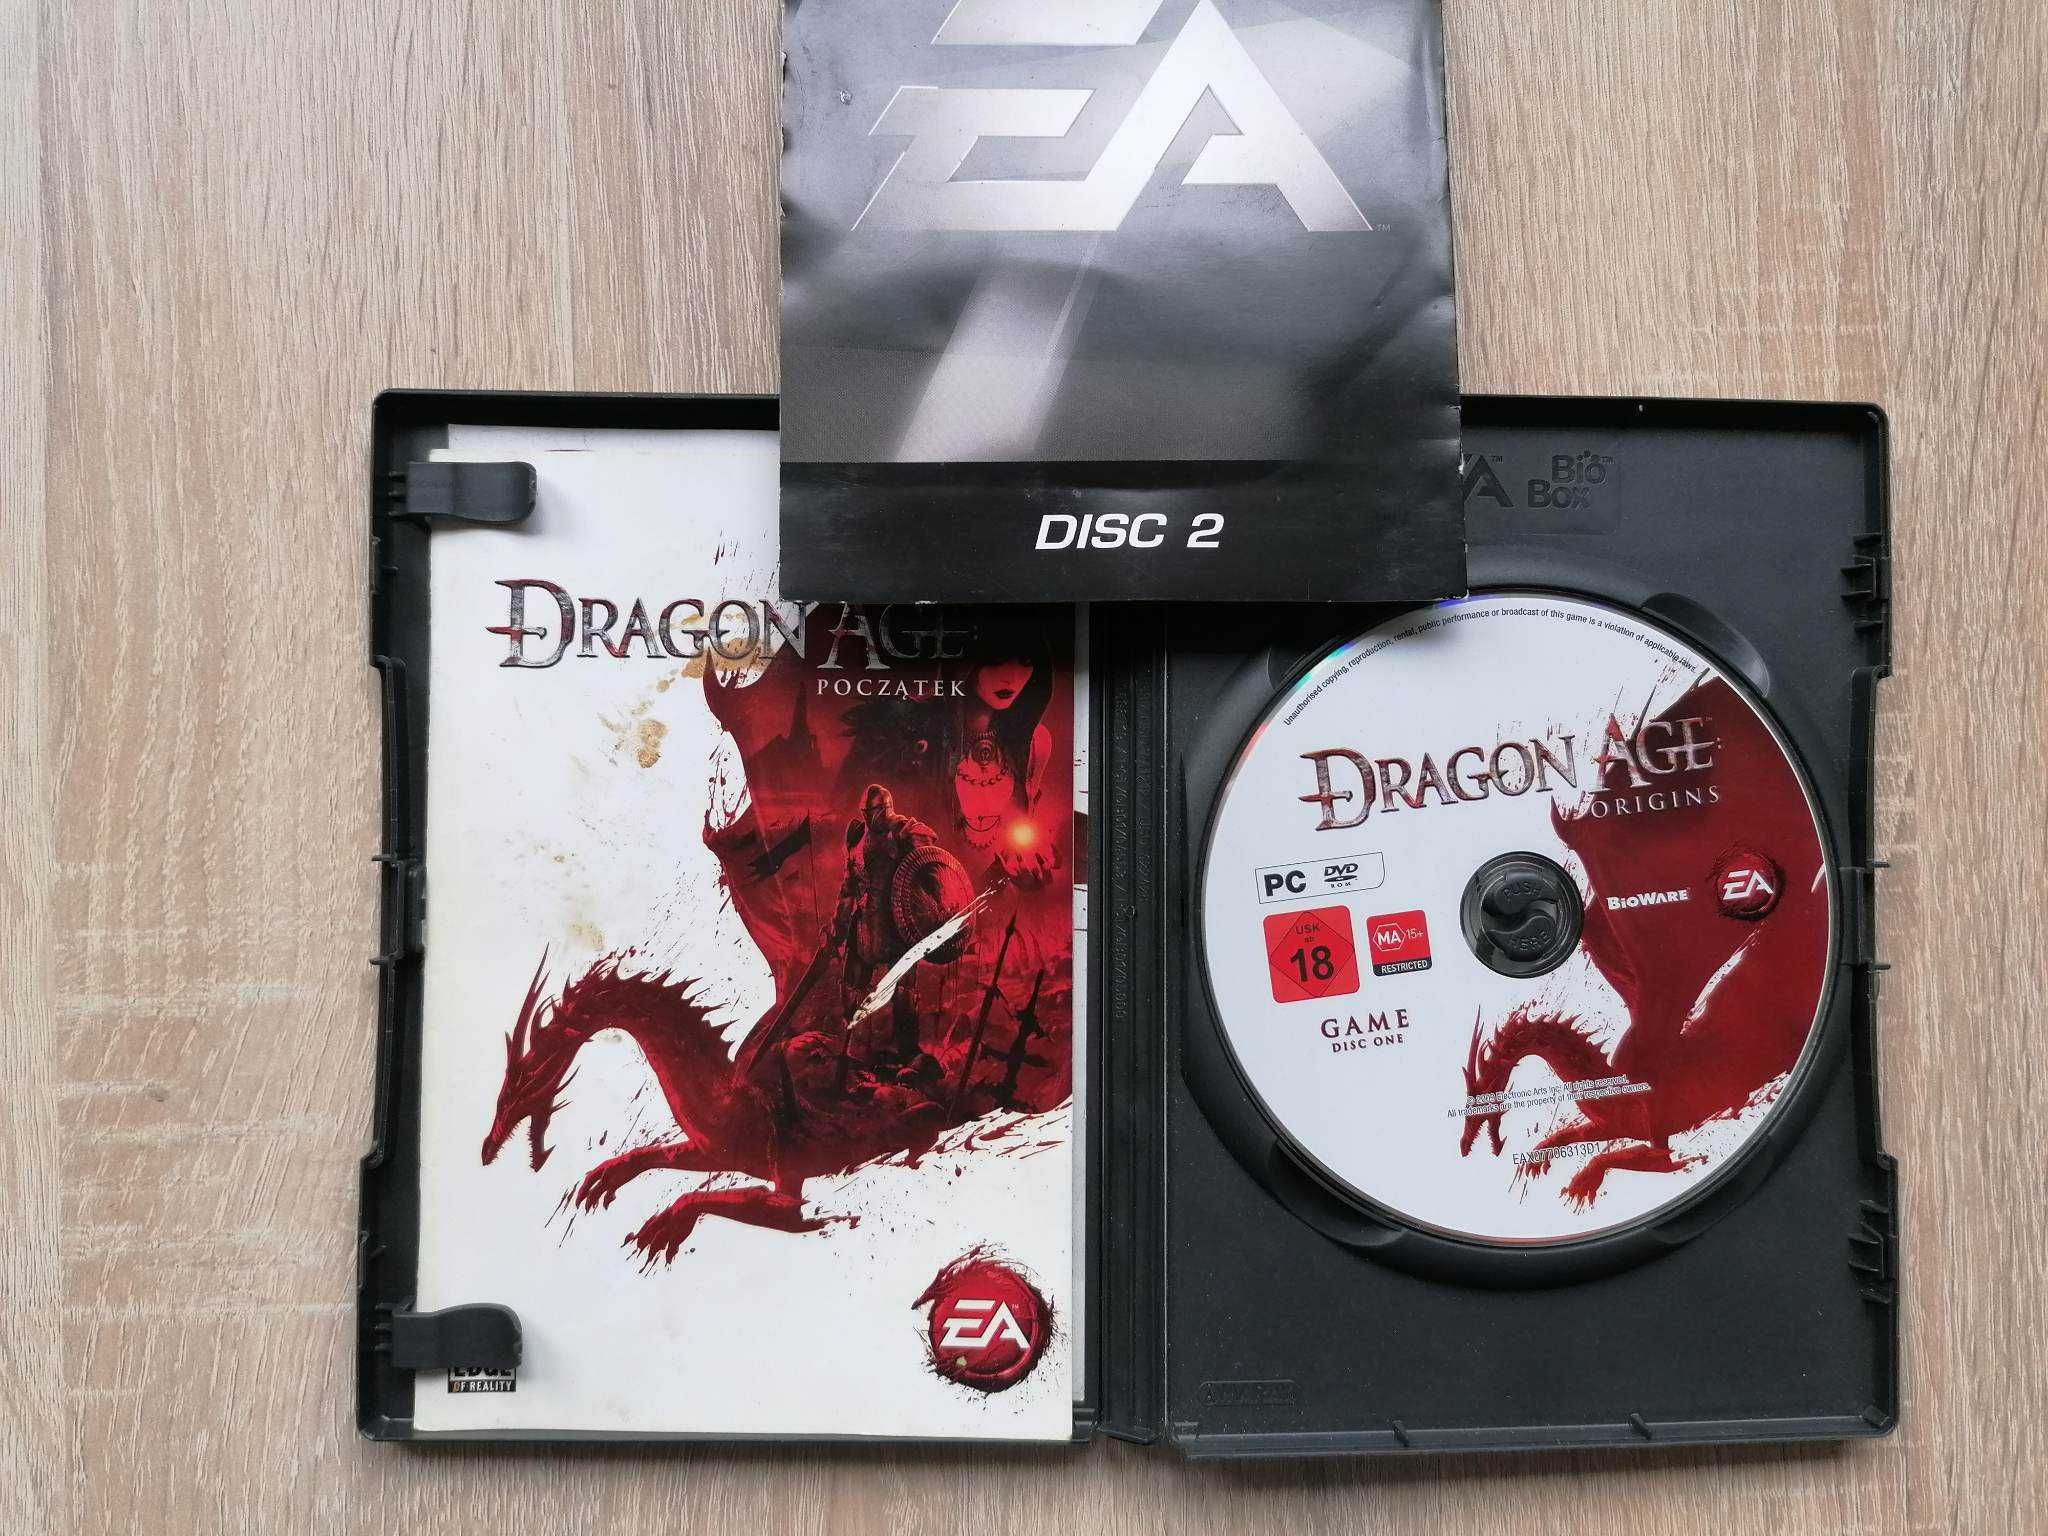 Dragon Age początek Pc cd-rom